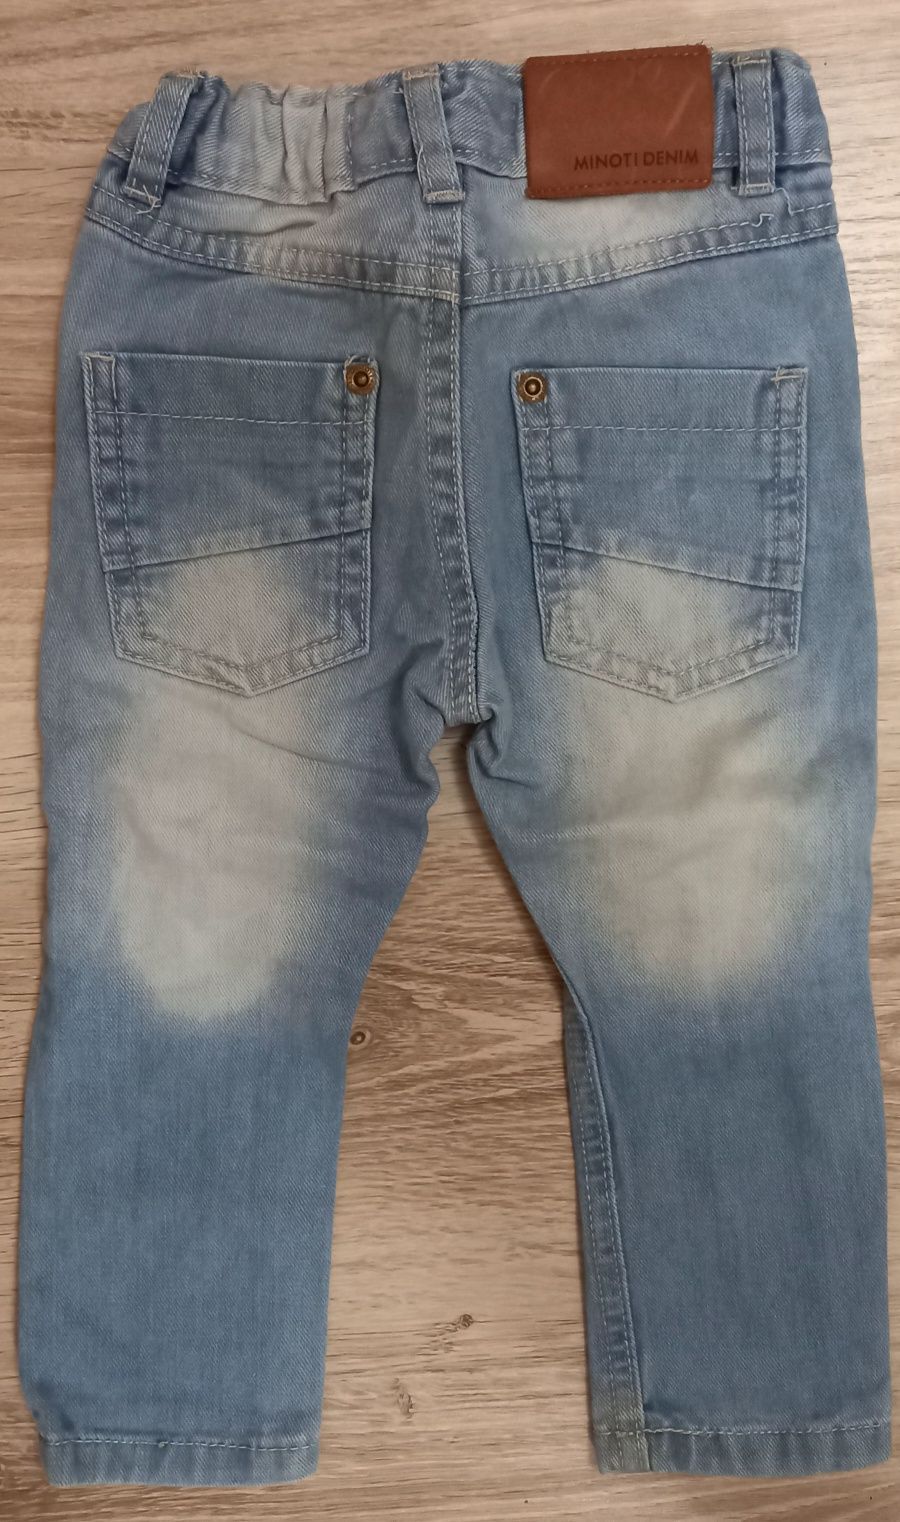 Minoti jeans/ spodnie rozm.80 cm